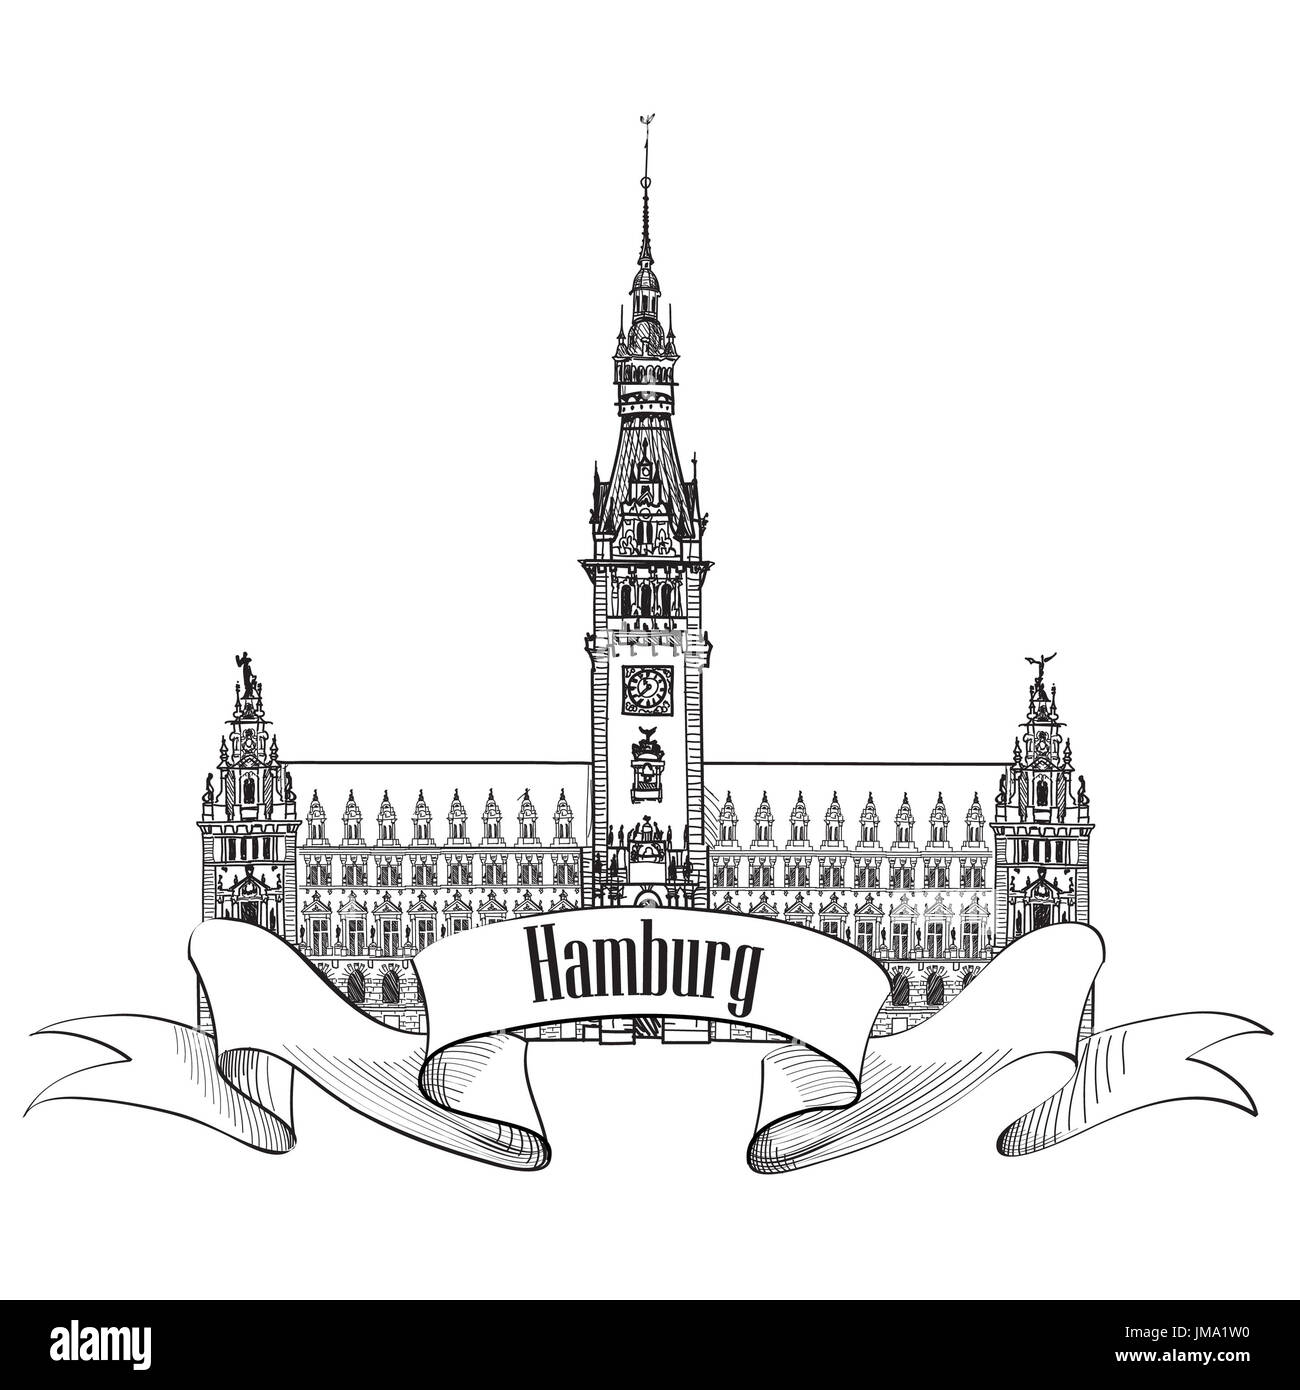 Hamburg Sehenswürdigkeiten Rathaus. Deutschland, Europa. Hand gezeichnet Vektor Skizze deutsche Symbol der Stadt. Stockfoto